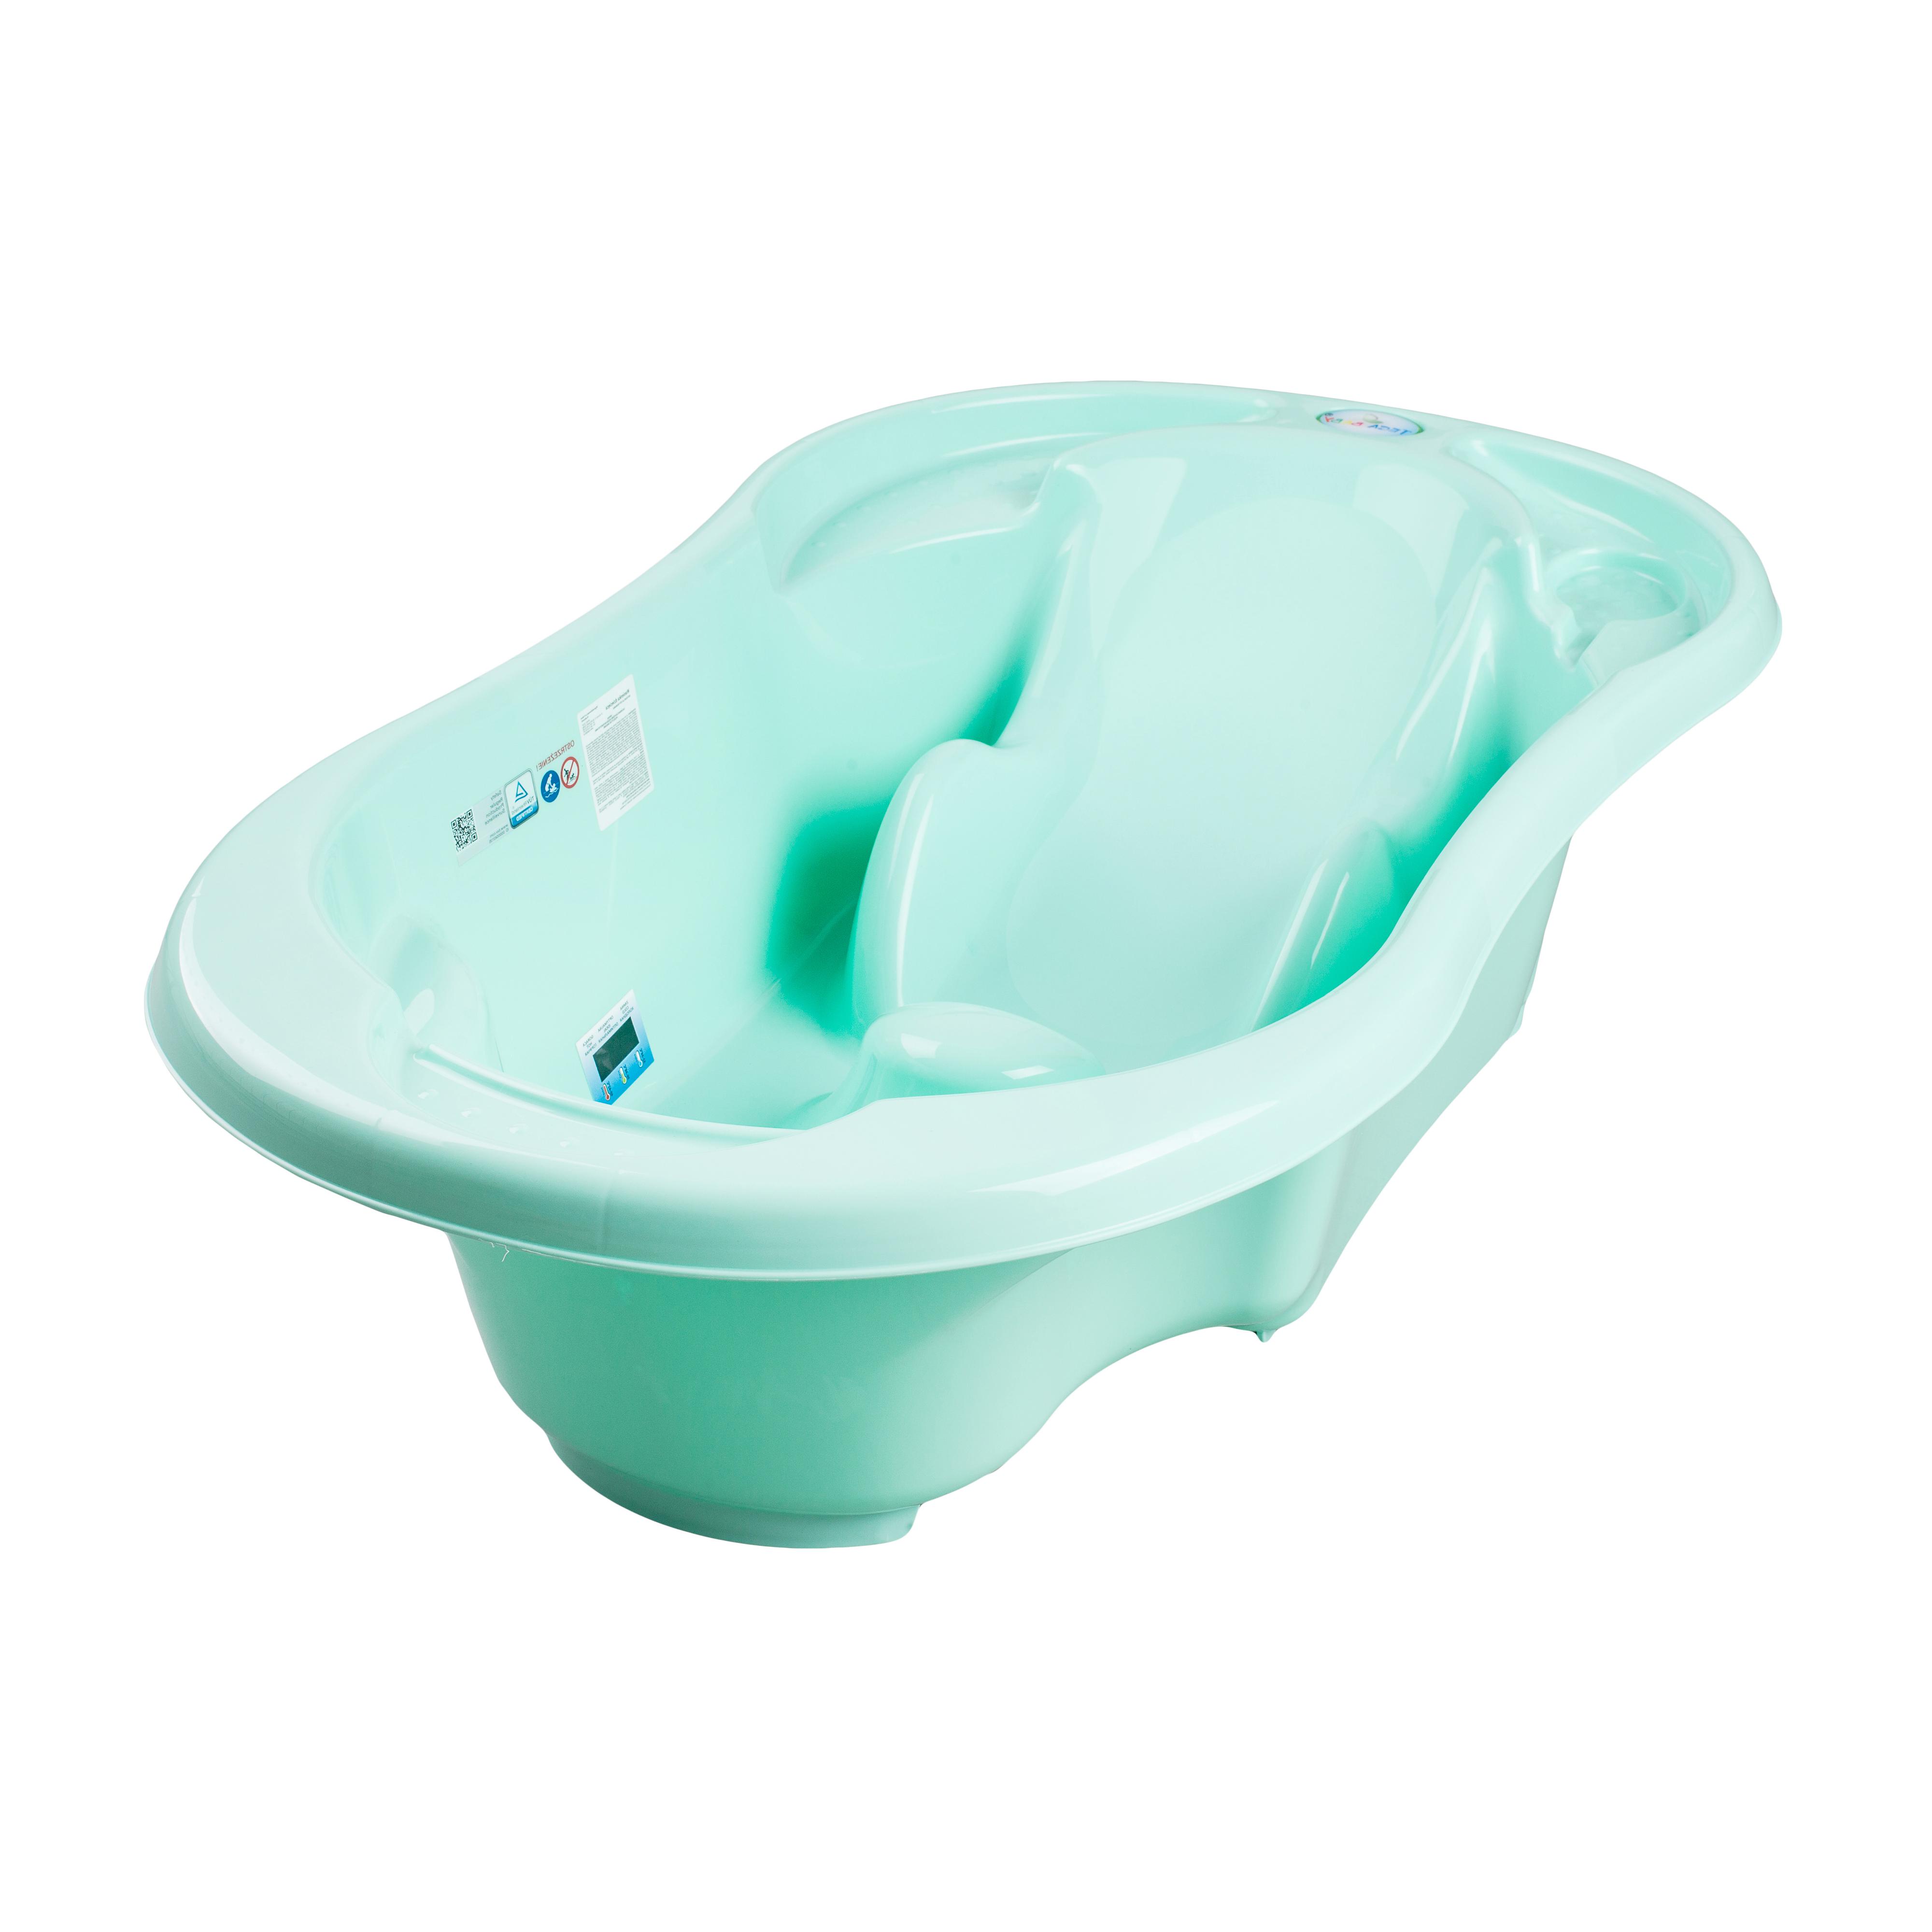 Анатомическая ванна 96 см с отливом Tega Baby Комфорт Салатовый (TG-011-105)